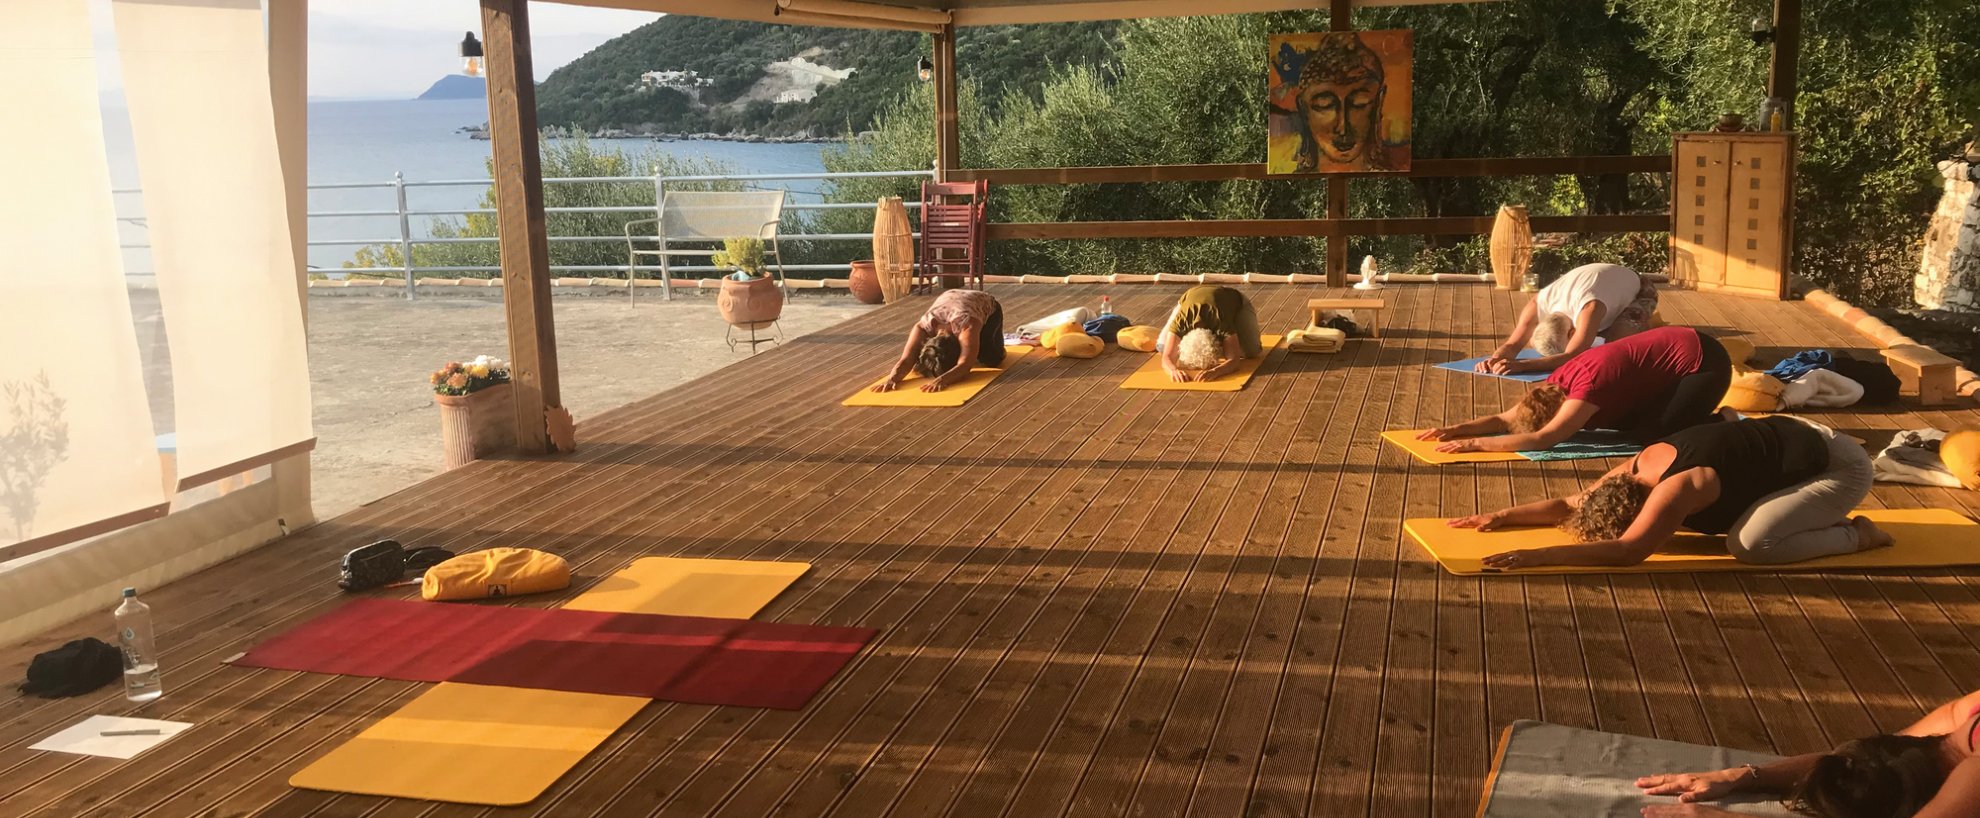 yoga urlaub reisen griechenland ilios center terrasse abend 